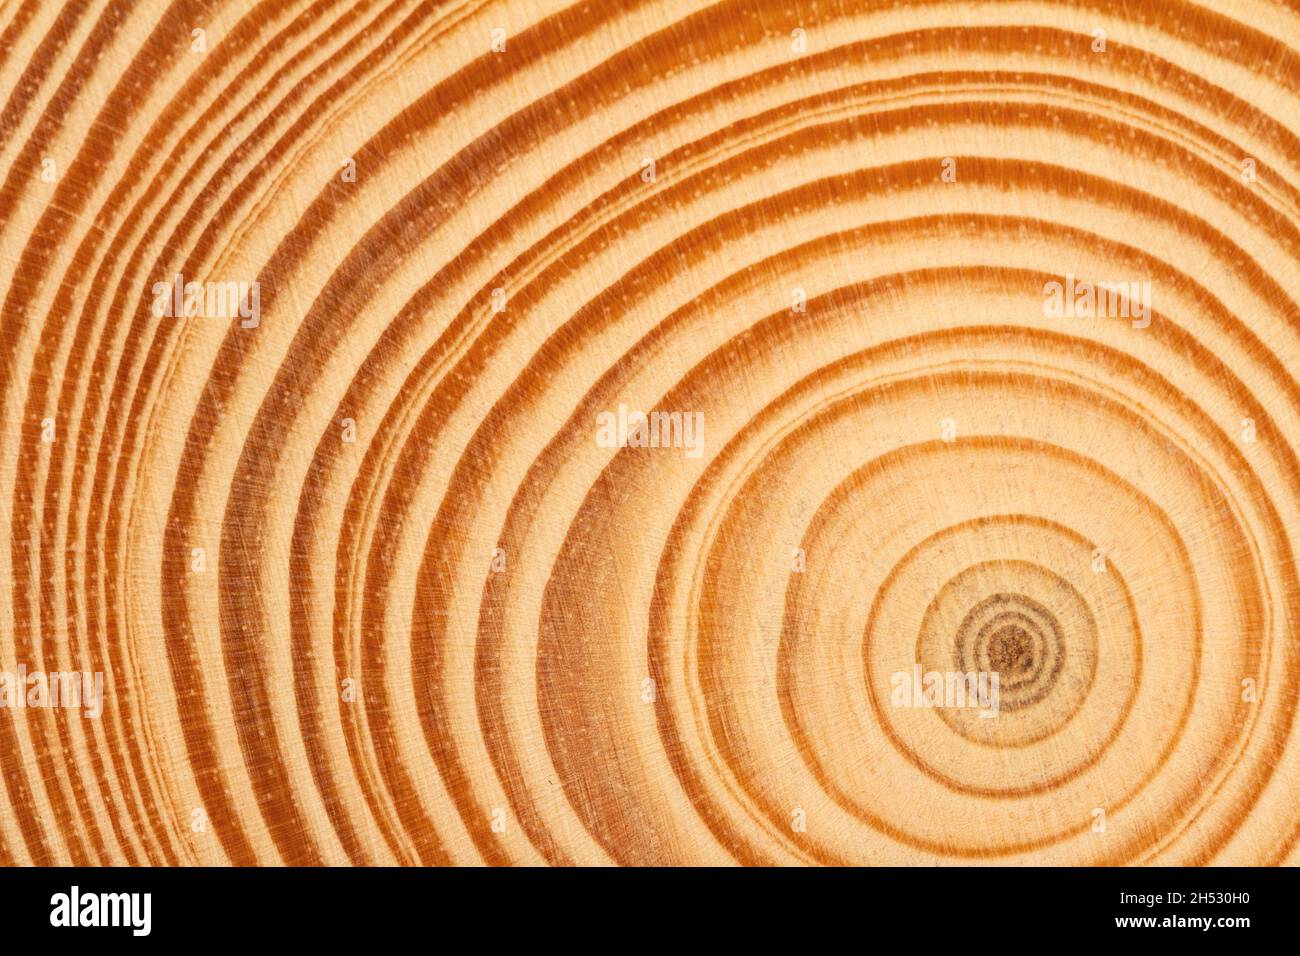 vue de dessus gros plan d'une tranche brune de texture de bois fraîchement coupée avec des anneaux de croissance concentriques denses Banque D'Images